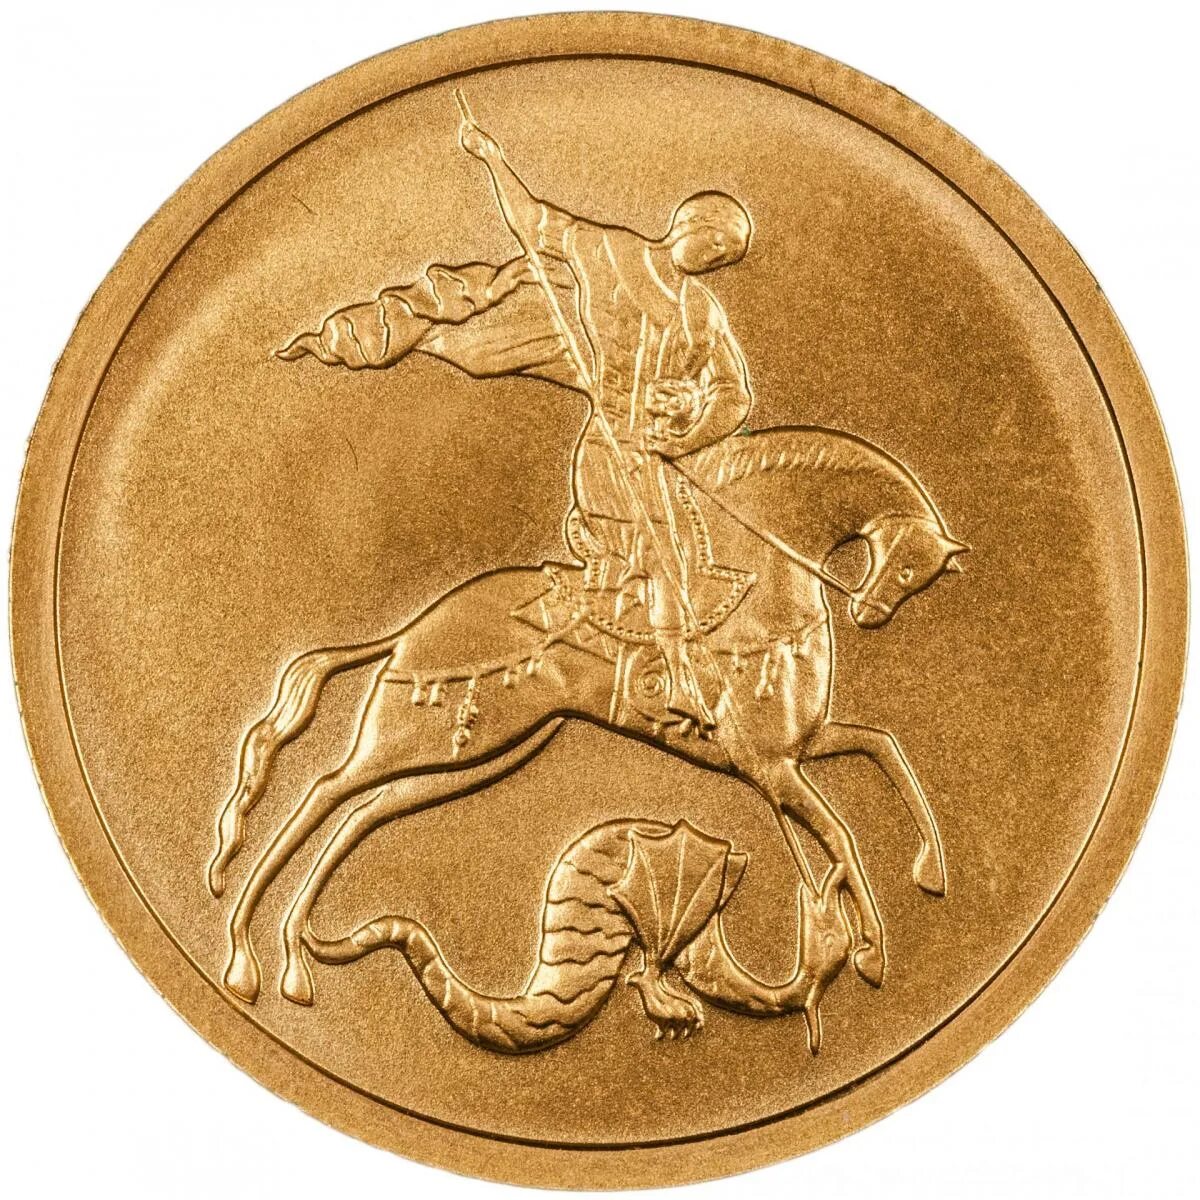 Золотая Монетка с Георгием Победоносцем. Купить золотые монеты сегодня